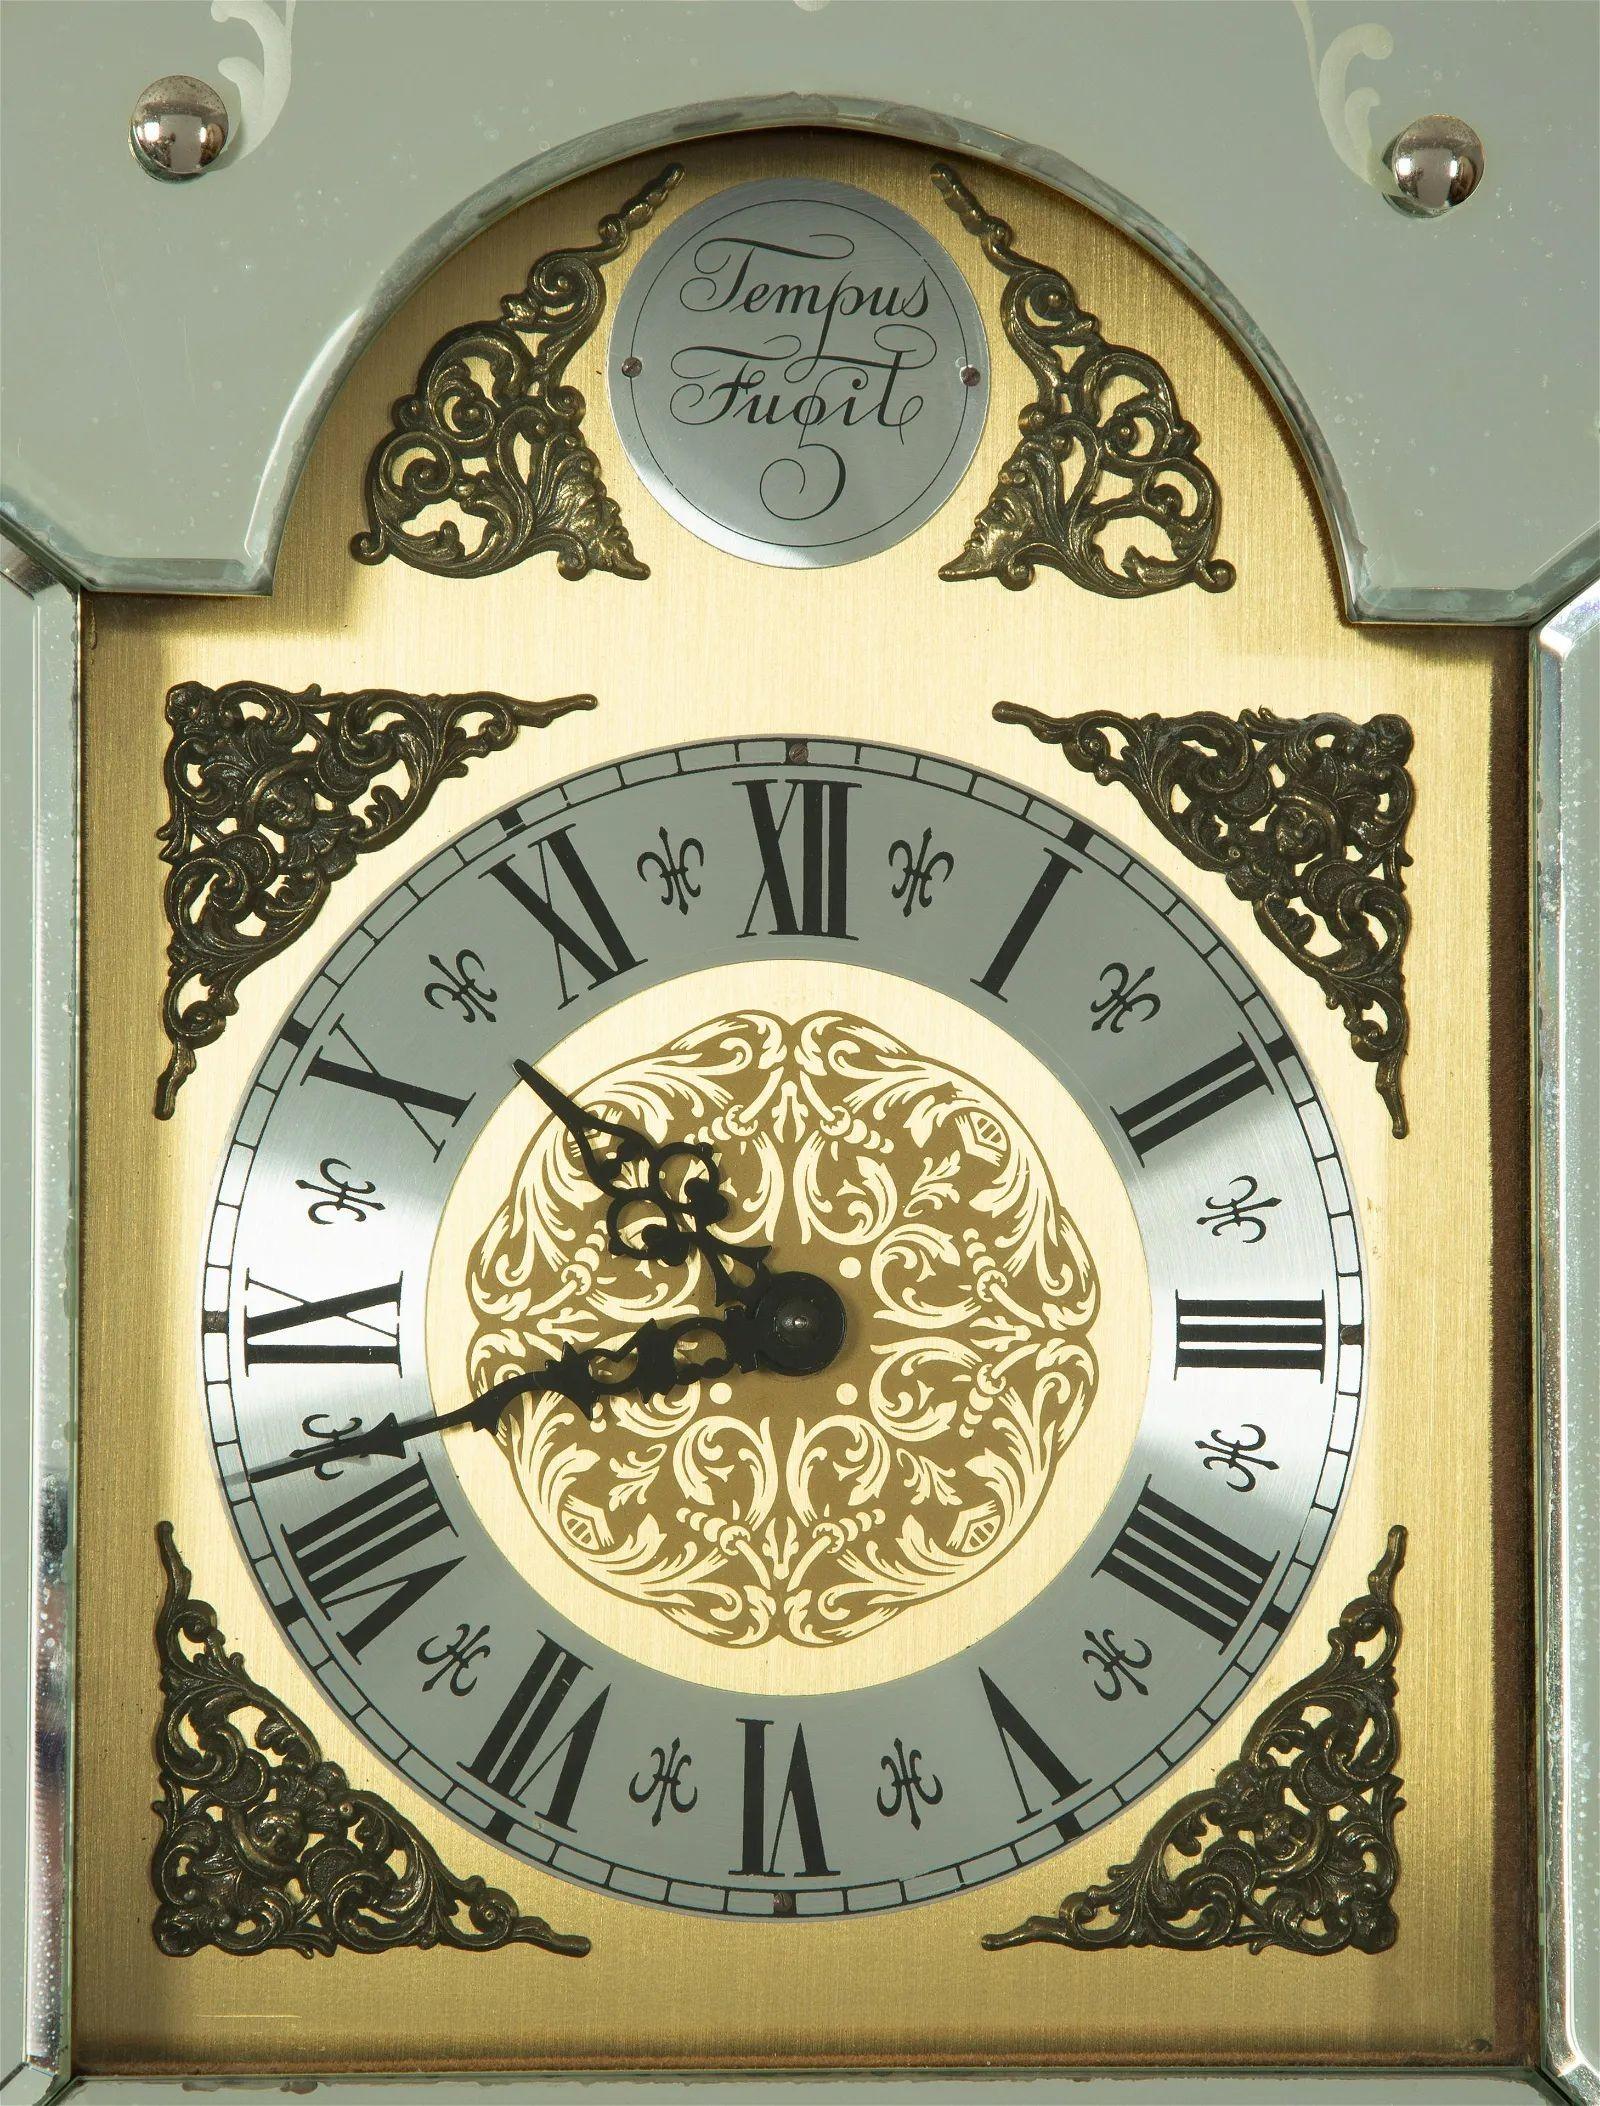 Hollywood Regency Stil Beveled Etched Glas Großvater Uhr. Dieses hochdekorative Kunstwerk im Hollywood-Regency-Stil hat ein Gehäuse aus Giltwood mit abgeschrägten, geätzten venezianischen Spiegeln an den Seiten und auf der Vorderseite. Diese Tempus